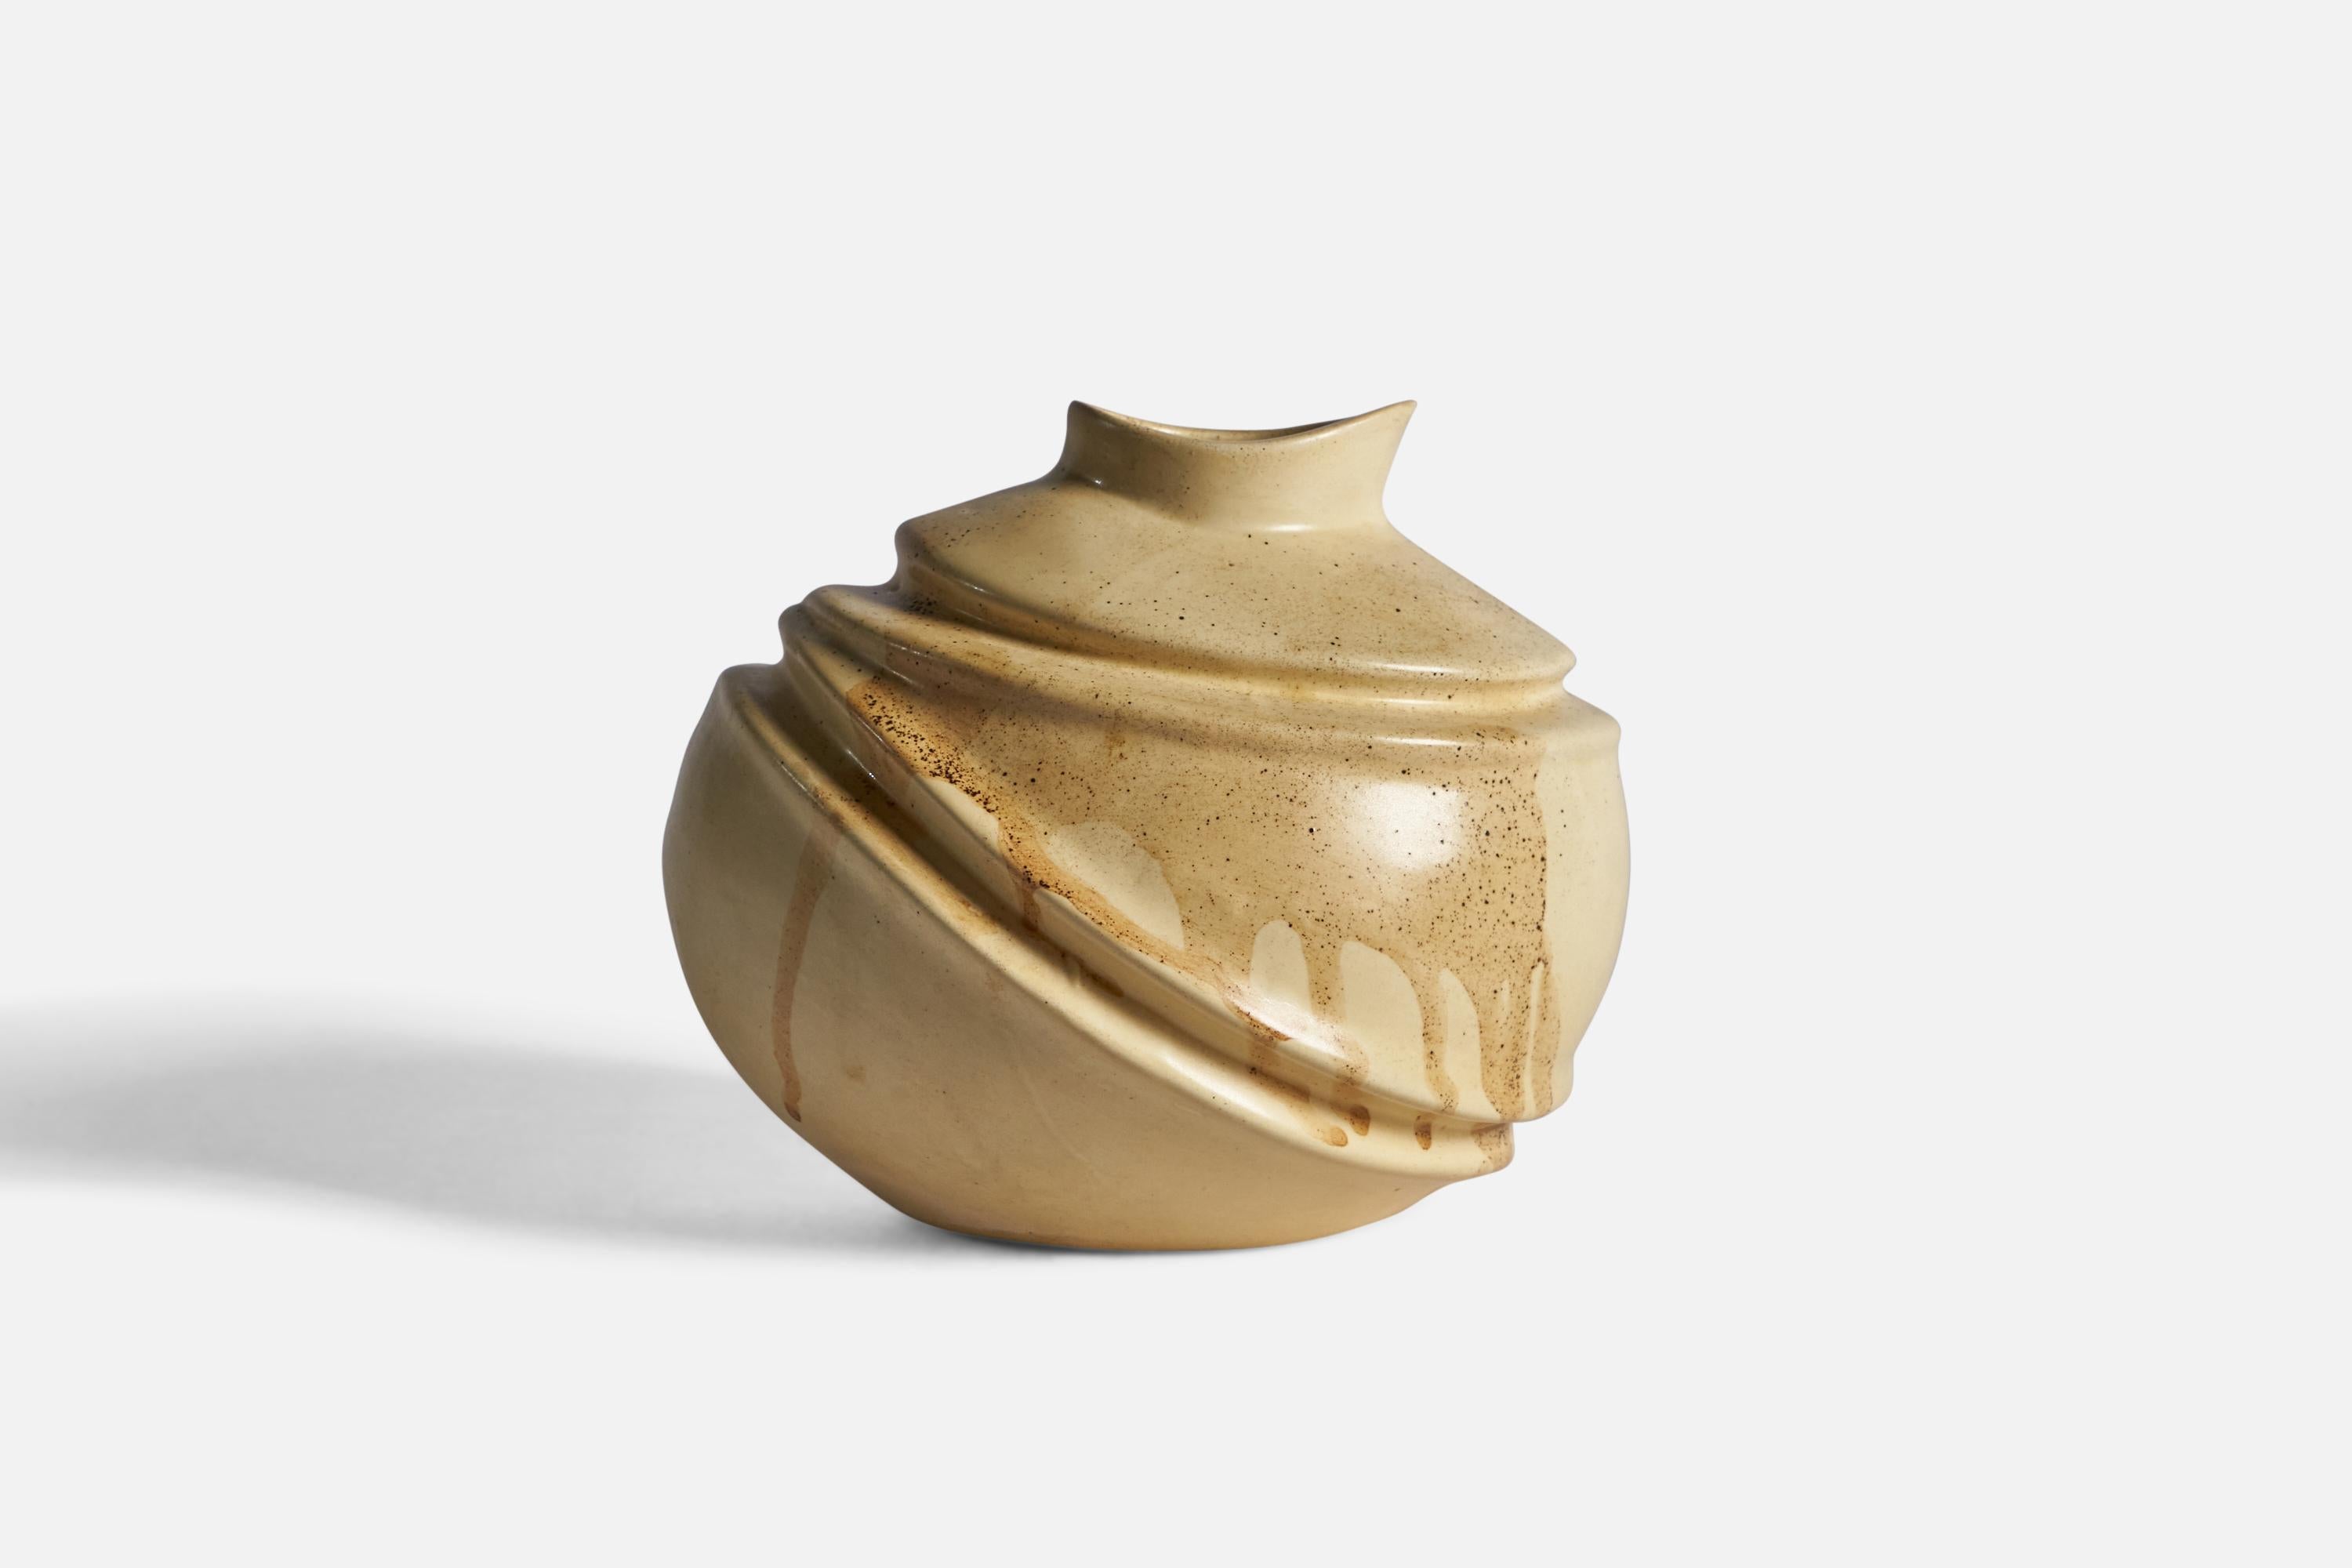 A beige-glazed ceramic vase, designed and produced in Sweden, c. 1970s.